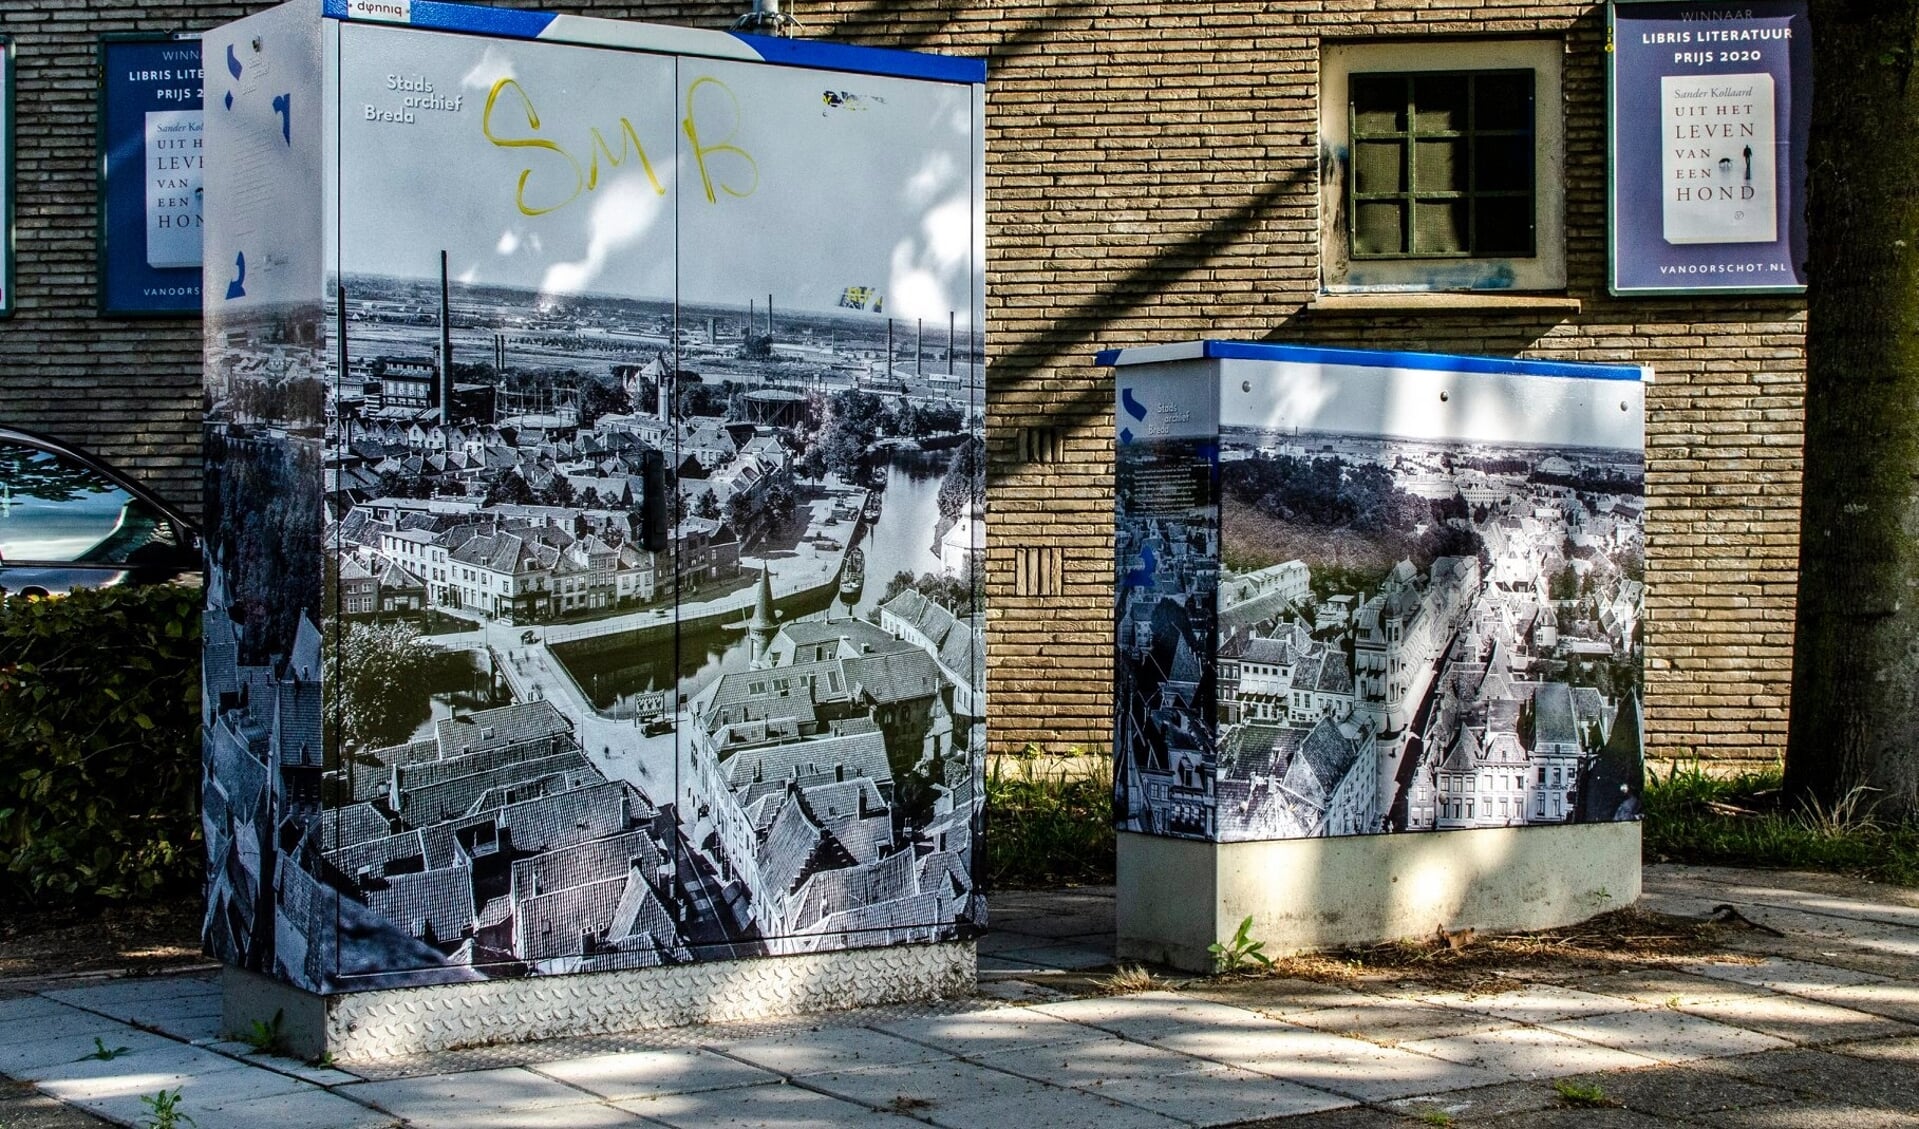 Op de elektriciteitskasten zijn overzichtsfoto's van Breda te zien uit 1931.